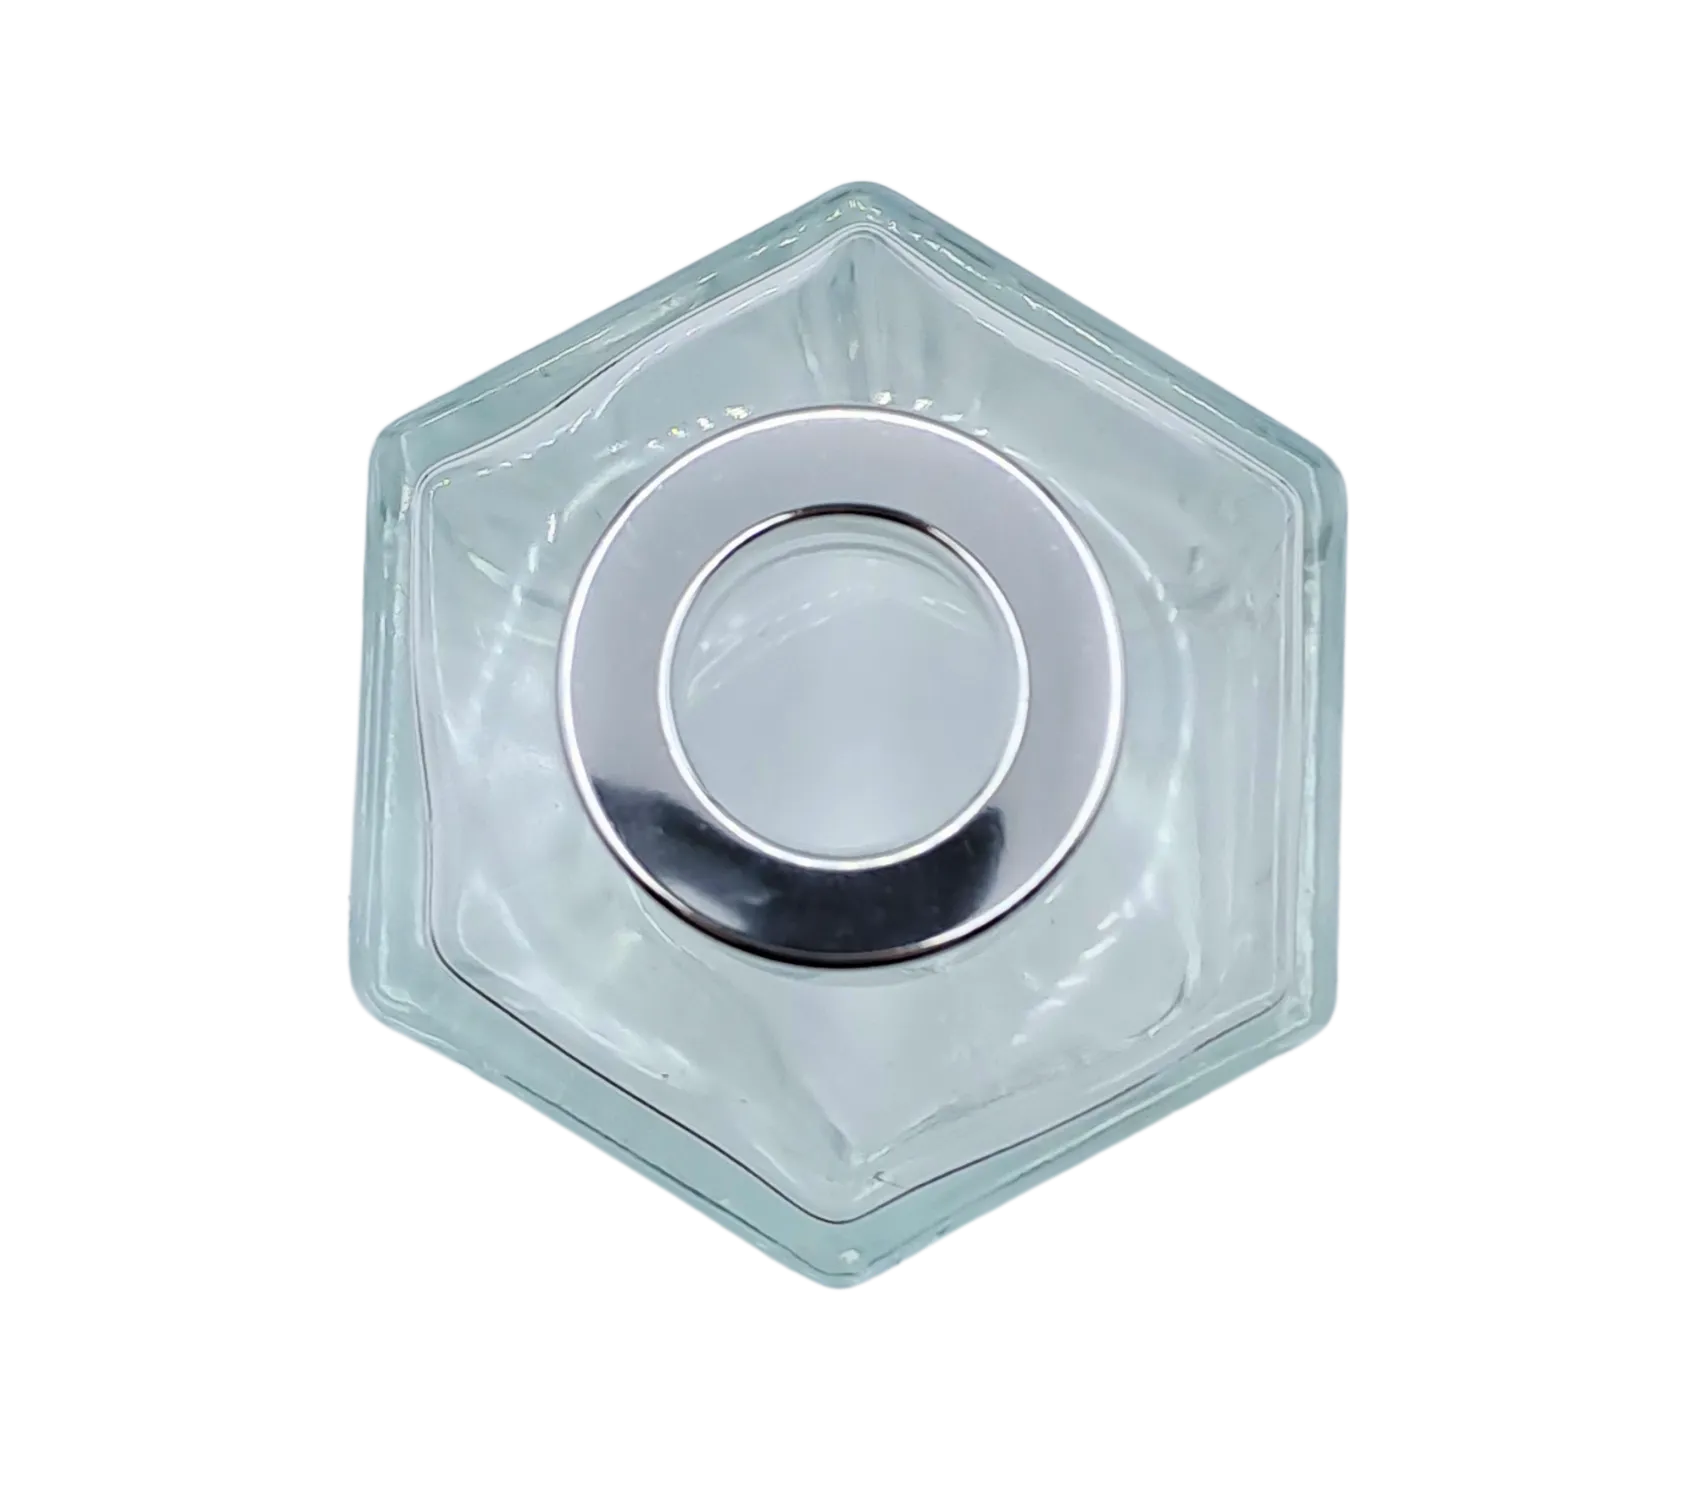 Bote 100 ml hexagonal transparente con tapón plateado para recarga de mikado. Plano cenital